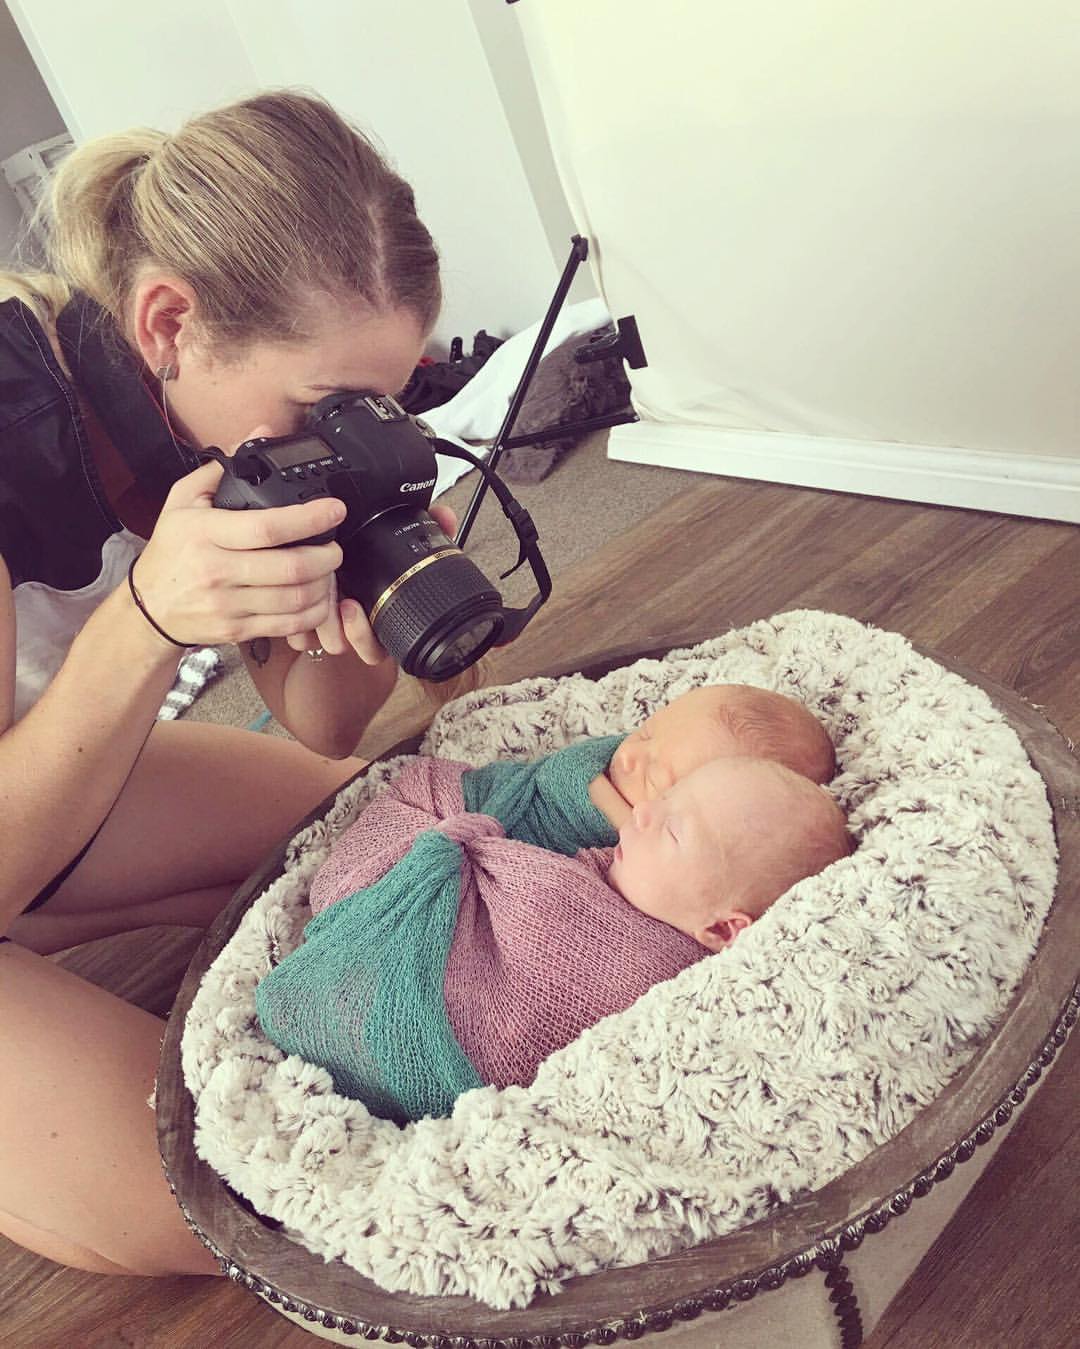 Photographer Ashlee Worthington capturing twins